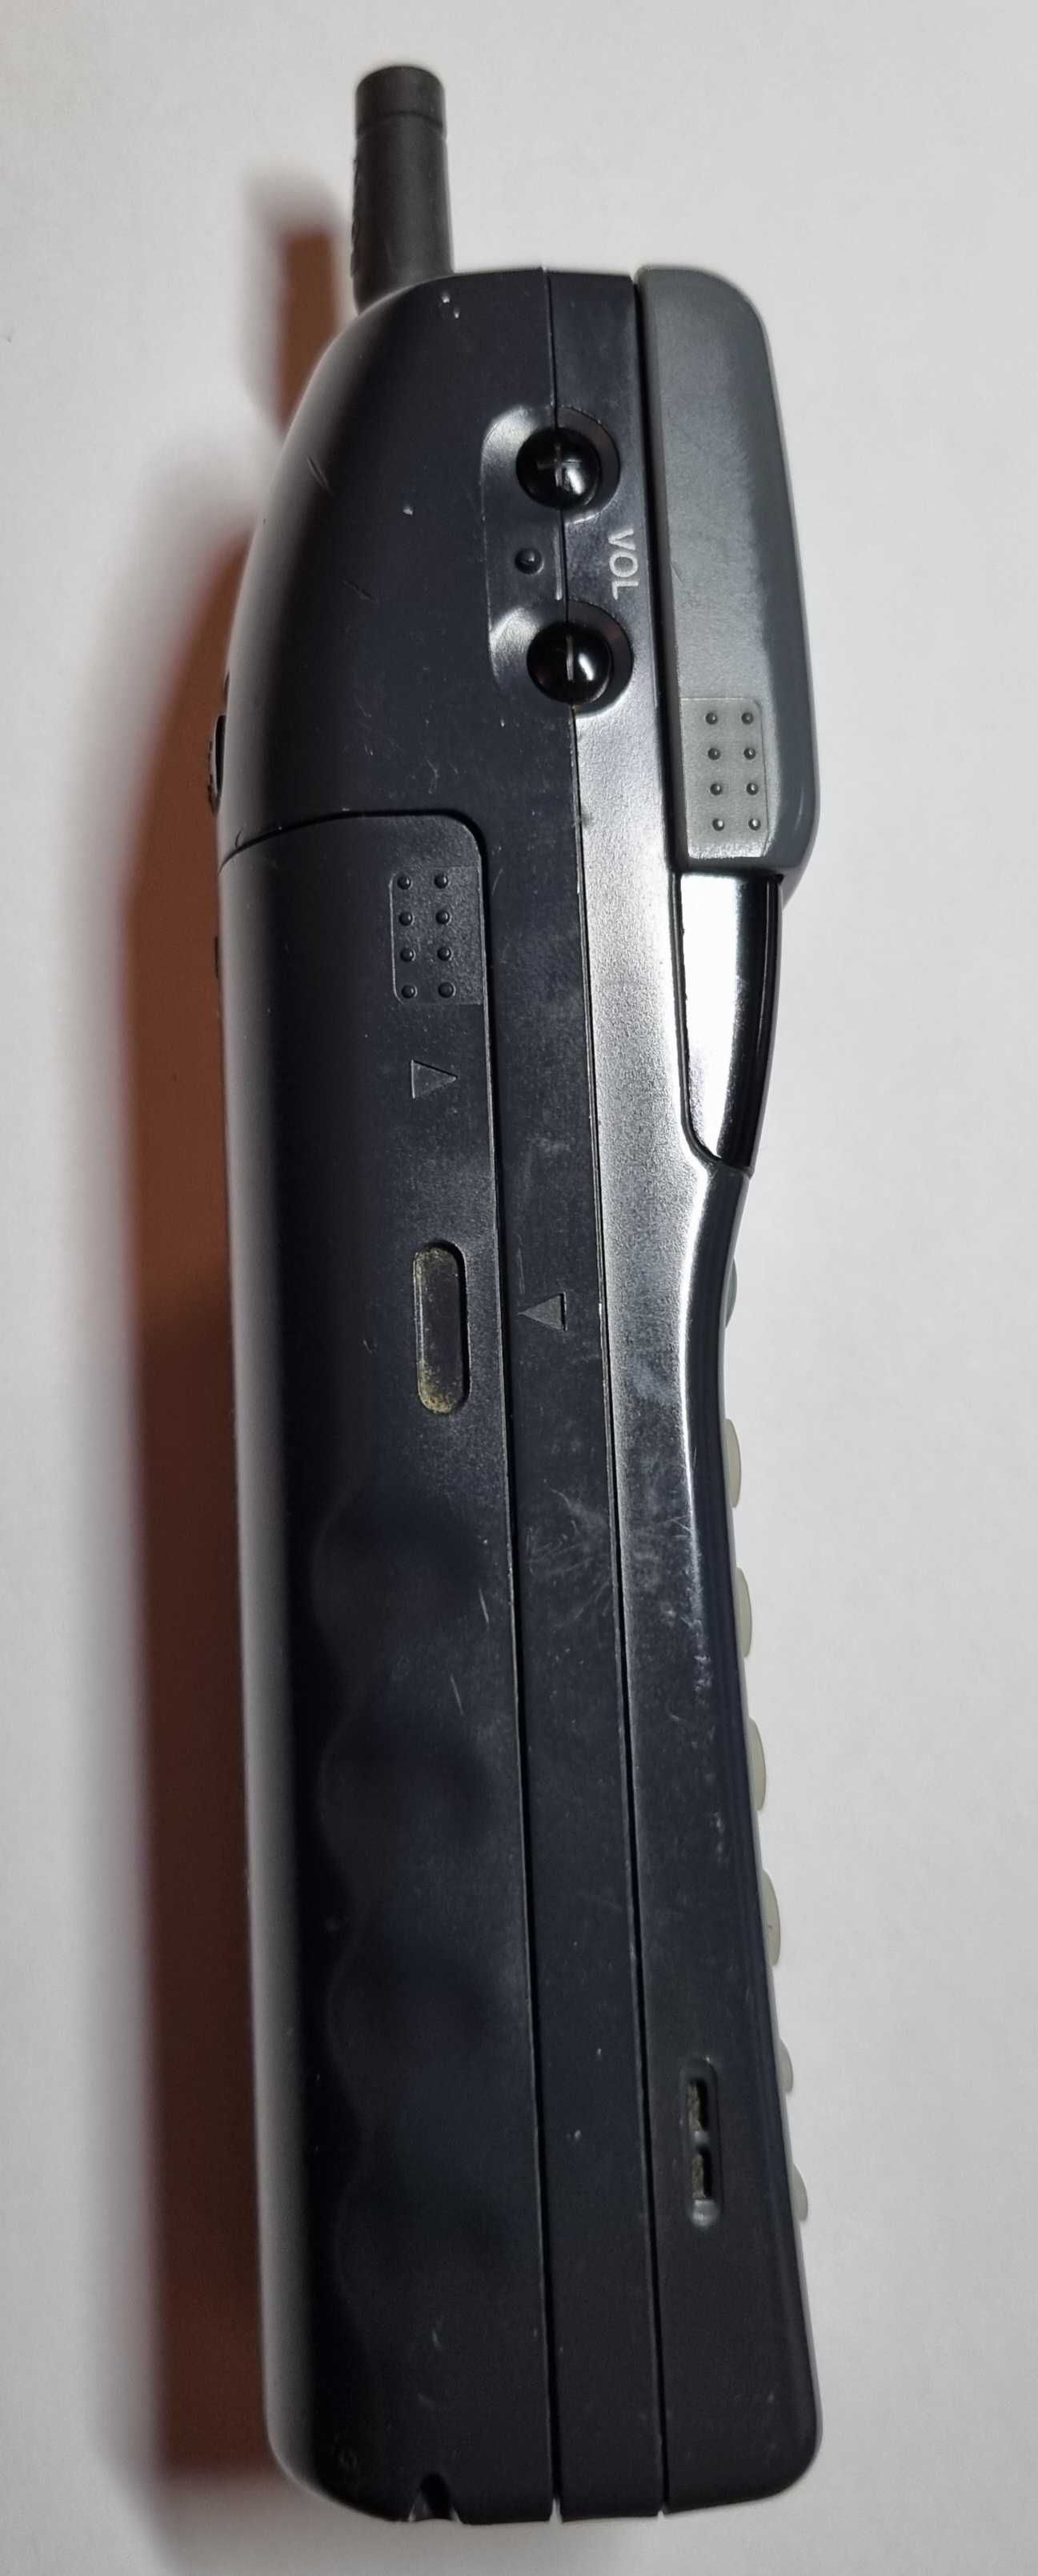 Telefon Sony CM-H333, Vintage, muzealny, 30-letni.